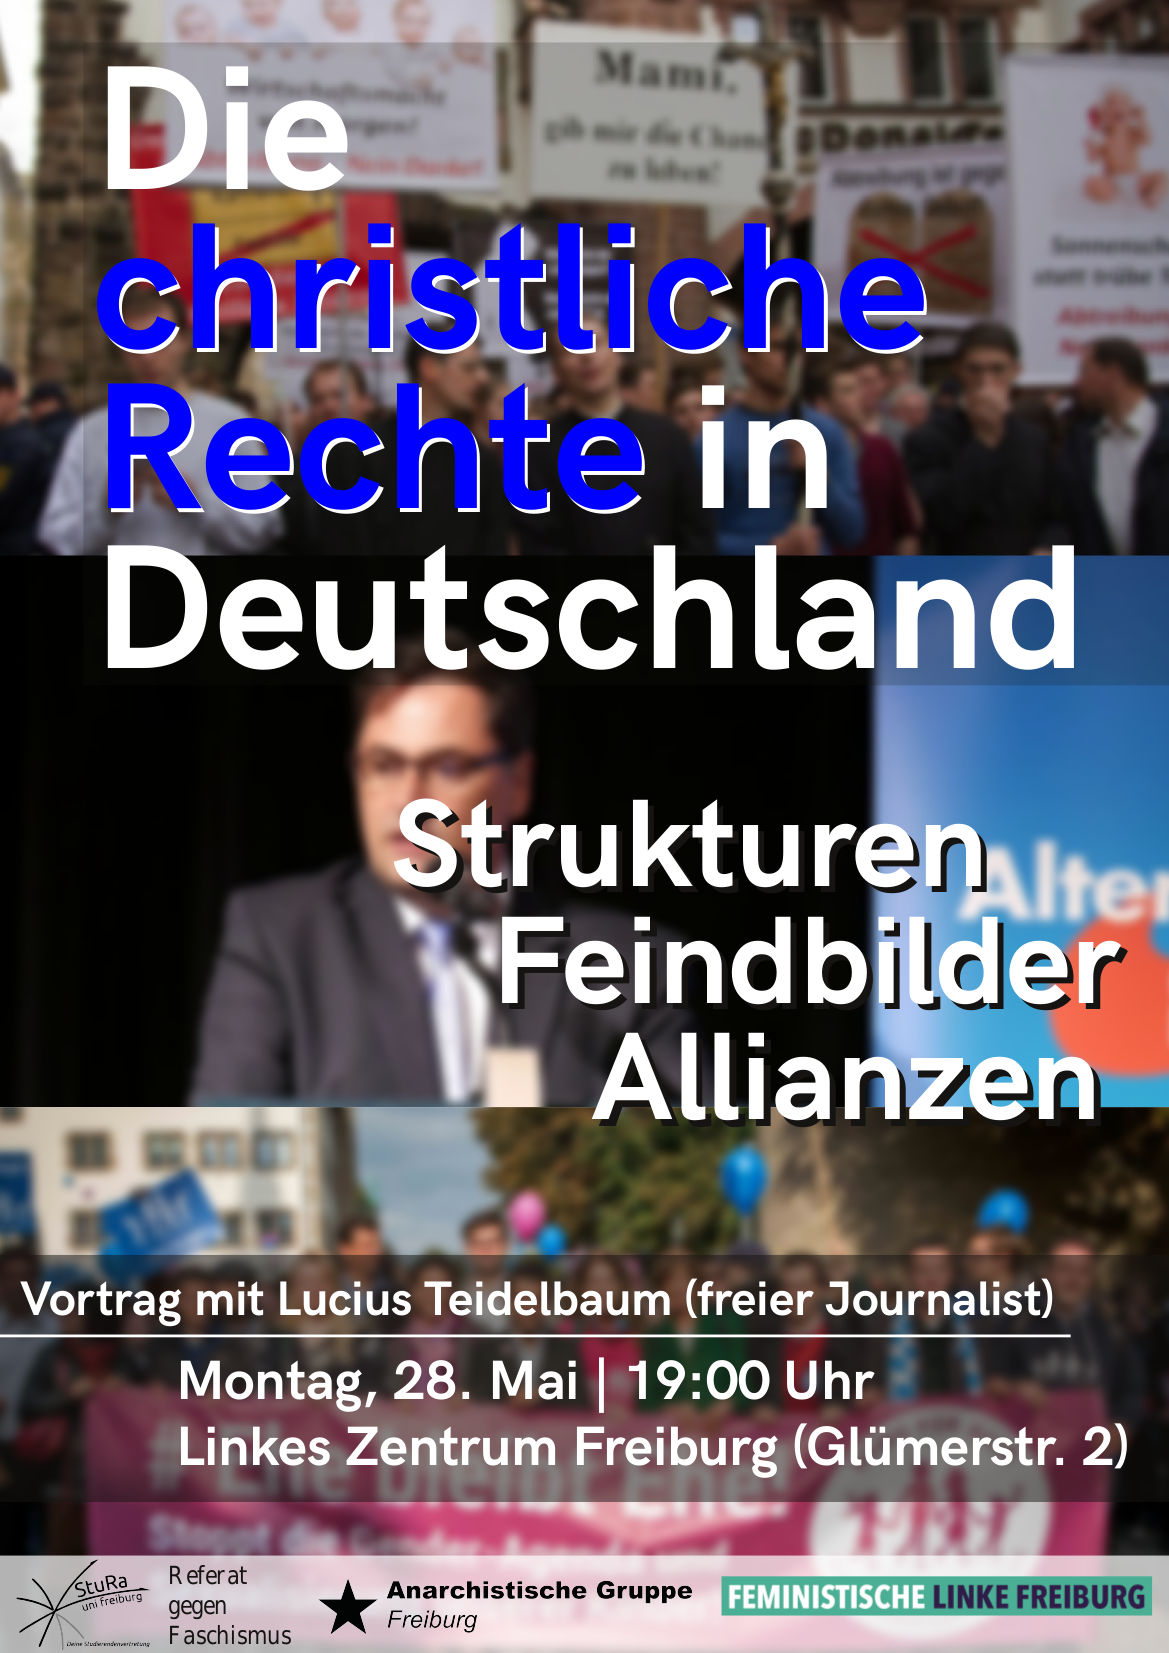 Vortrag “Die christliche Rechte in Deutschland”